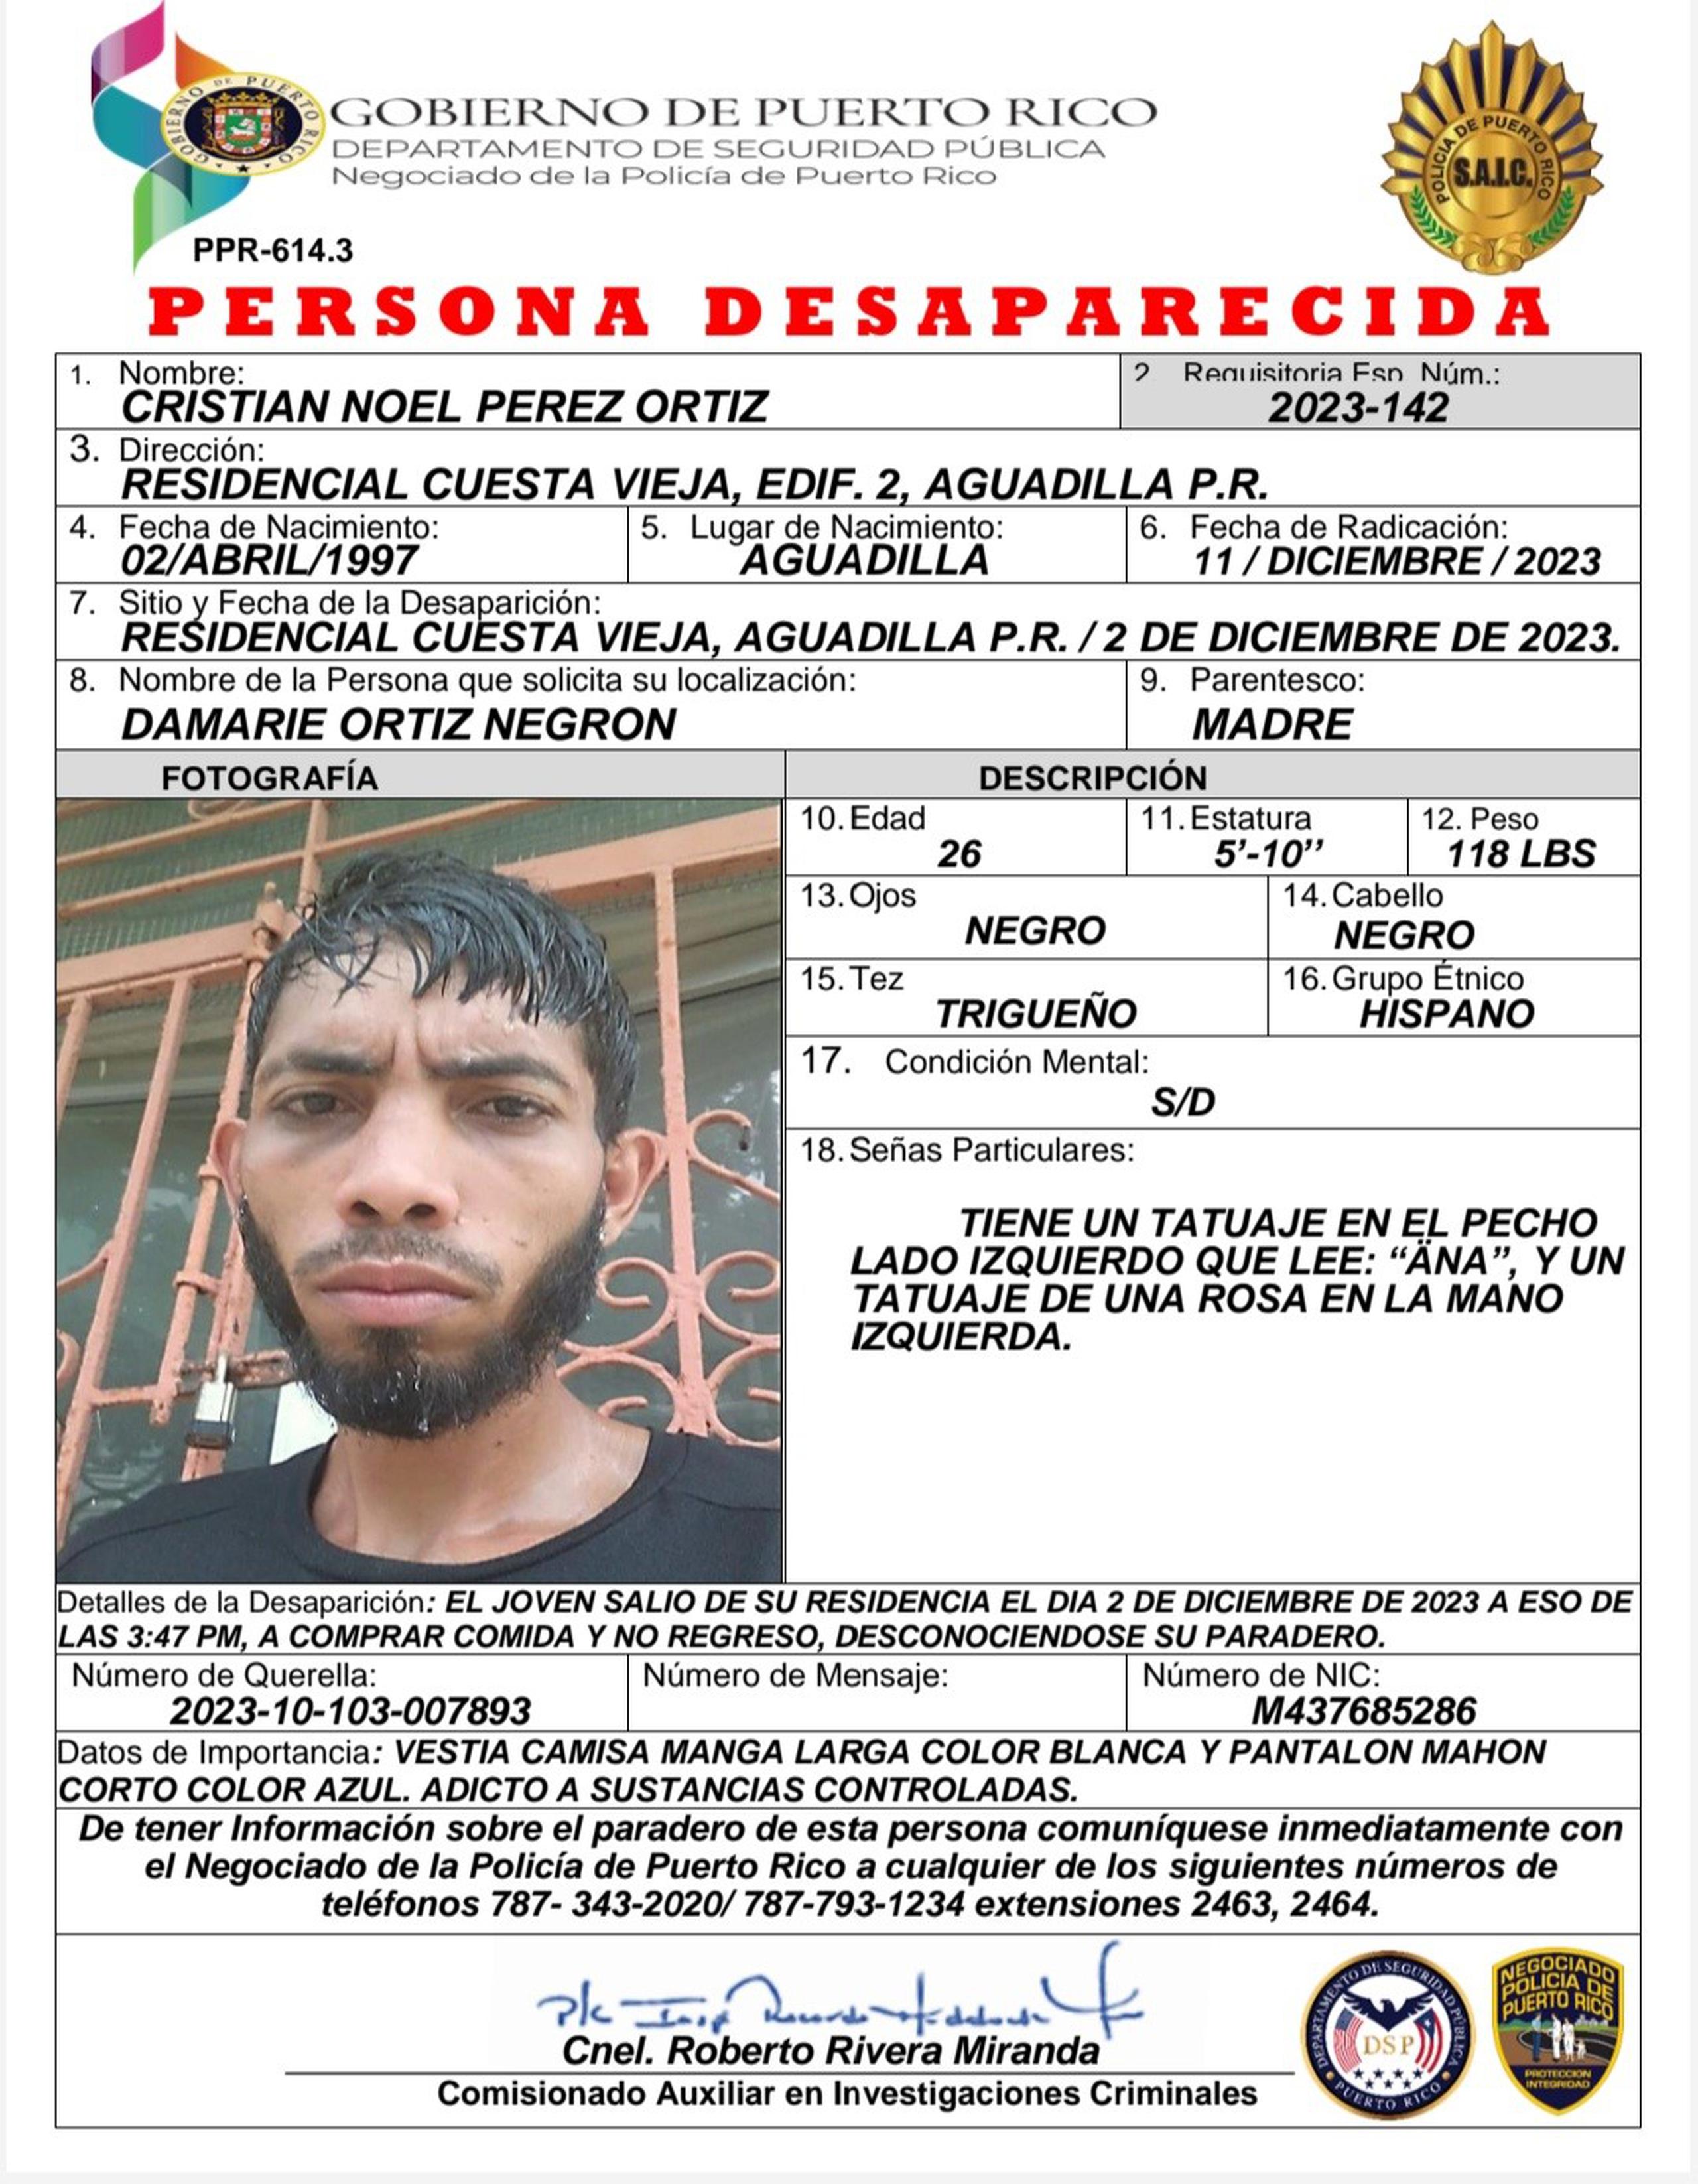 Cristian Noel Pérez Ortiz de 26 años, fue visto por última vez el sábado, 2 de diciembre, cuando salió del residencial Cuesta Vieja, en Aguadilla a comprar comida y no regresó.